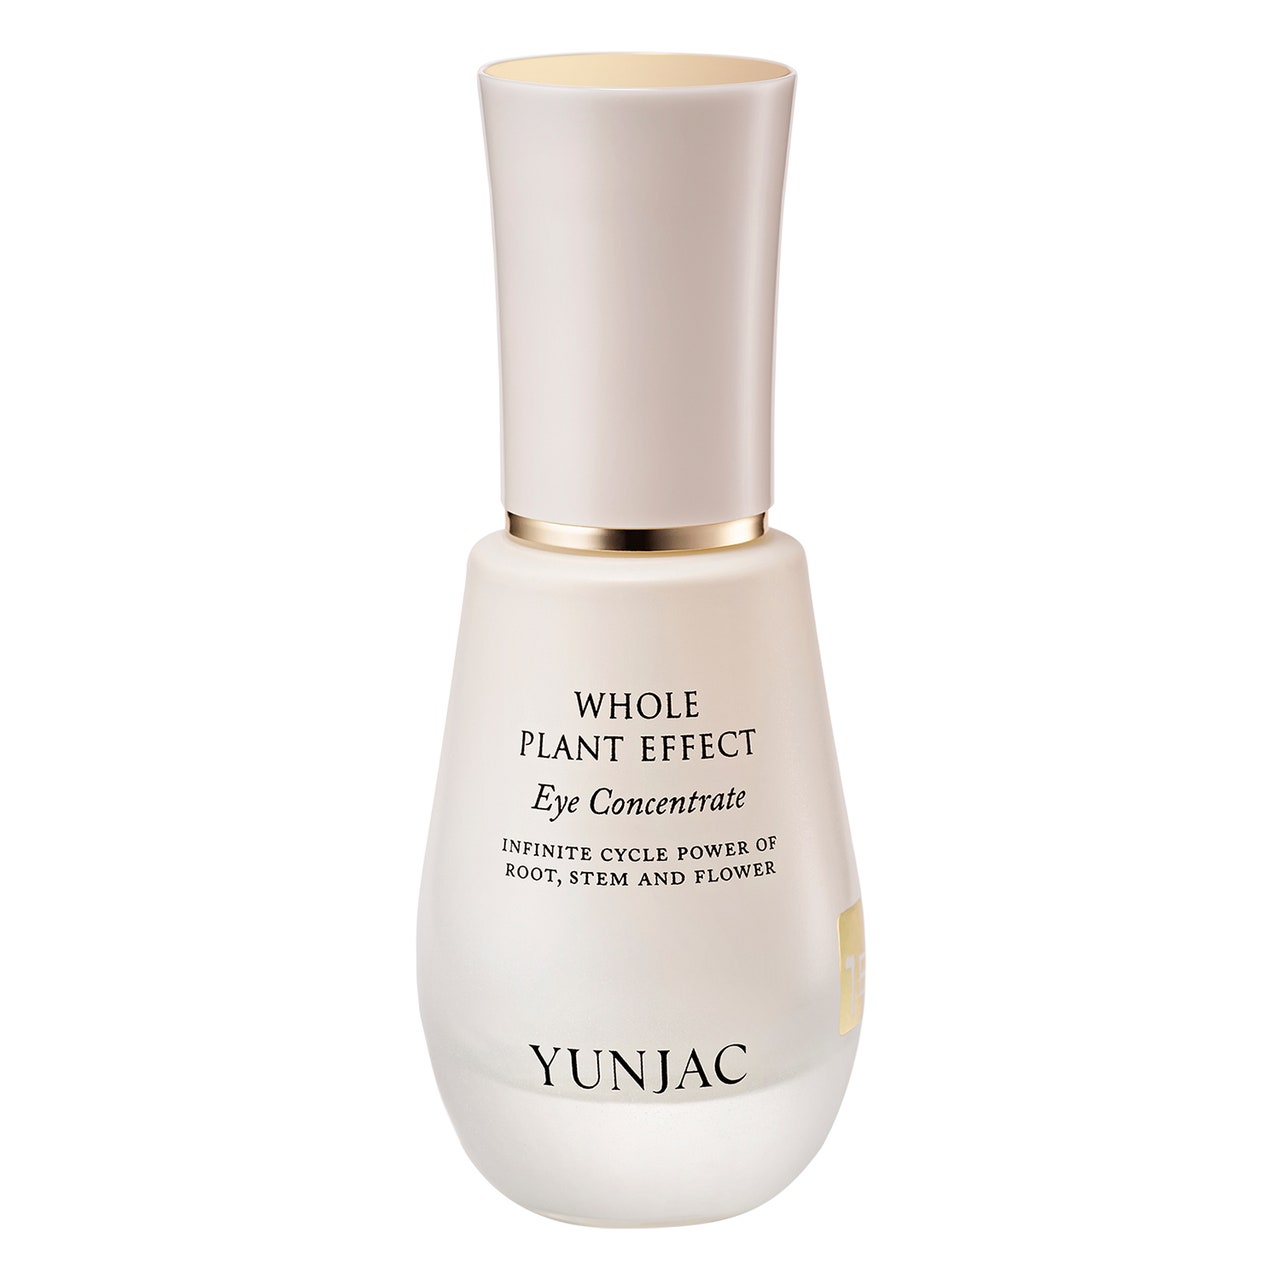 Yunjac Whole Plant Effect Eye Concentrate abgerundete beige Flasche auf weißem Hintergrund